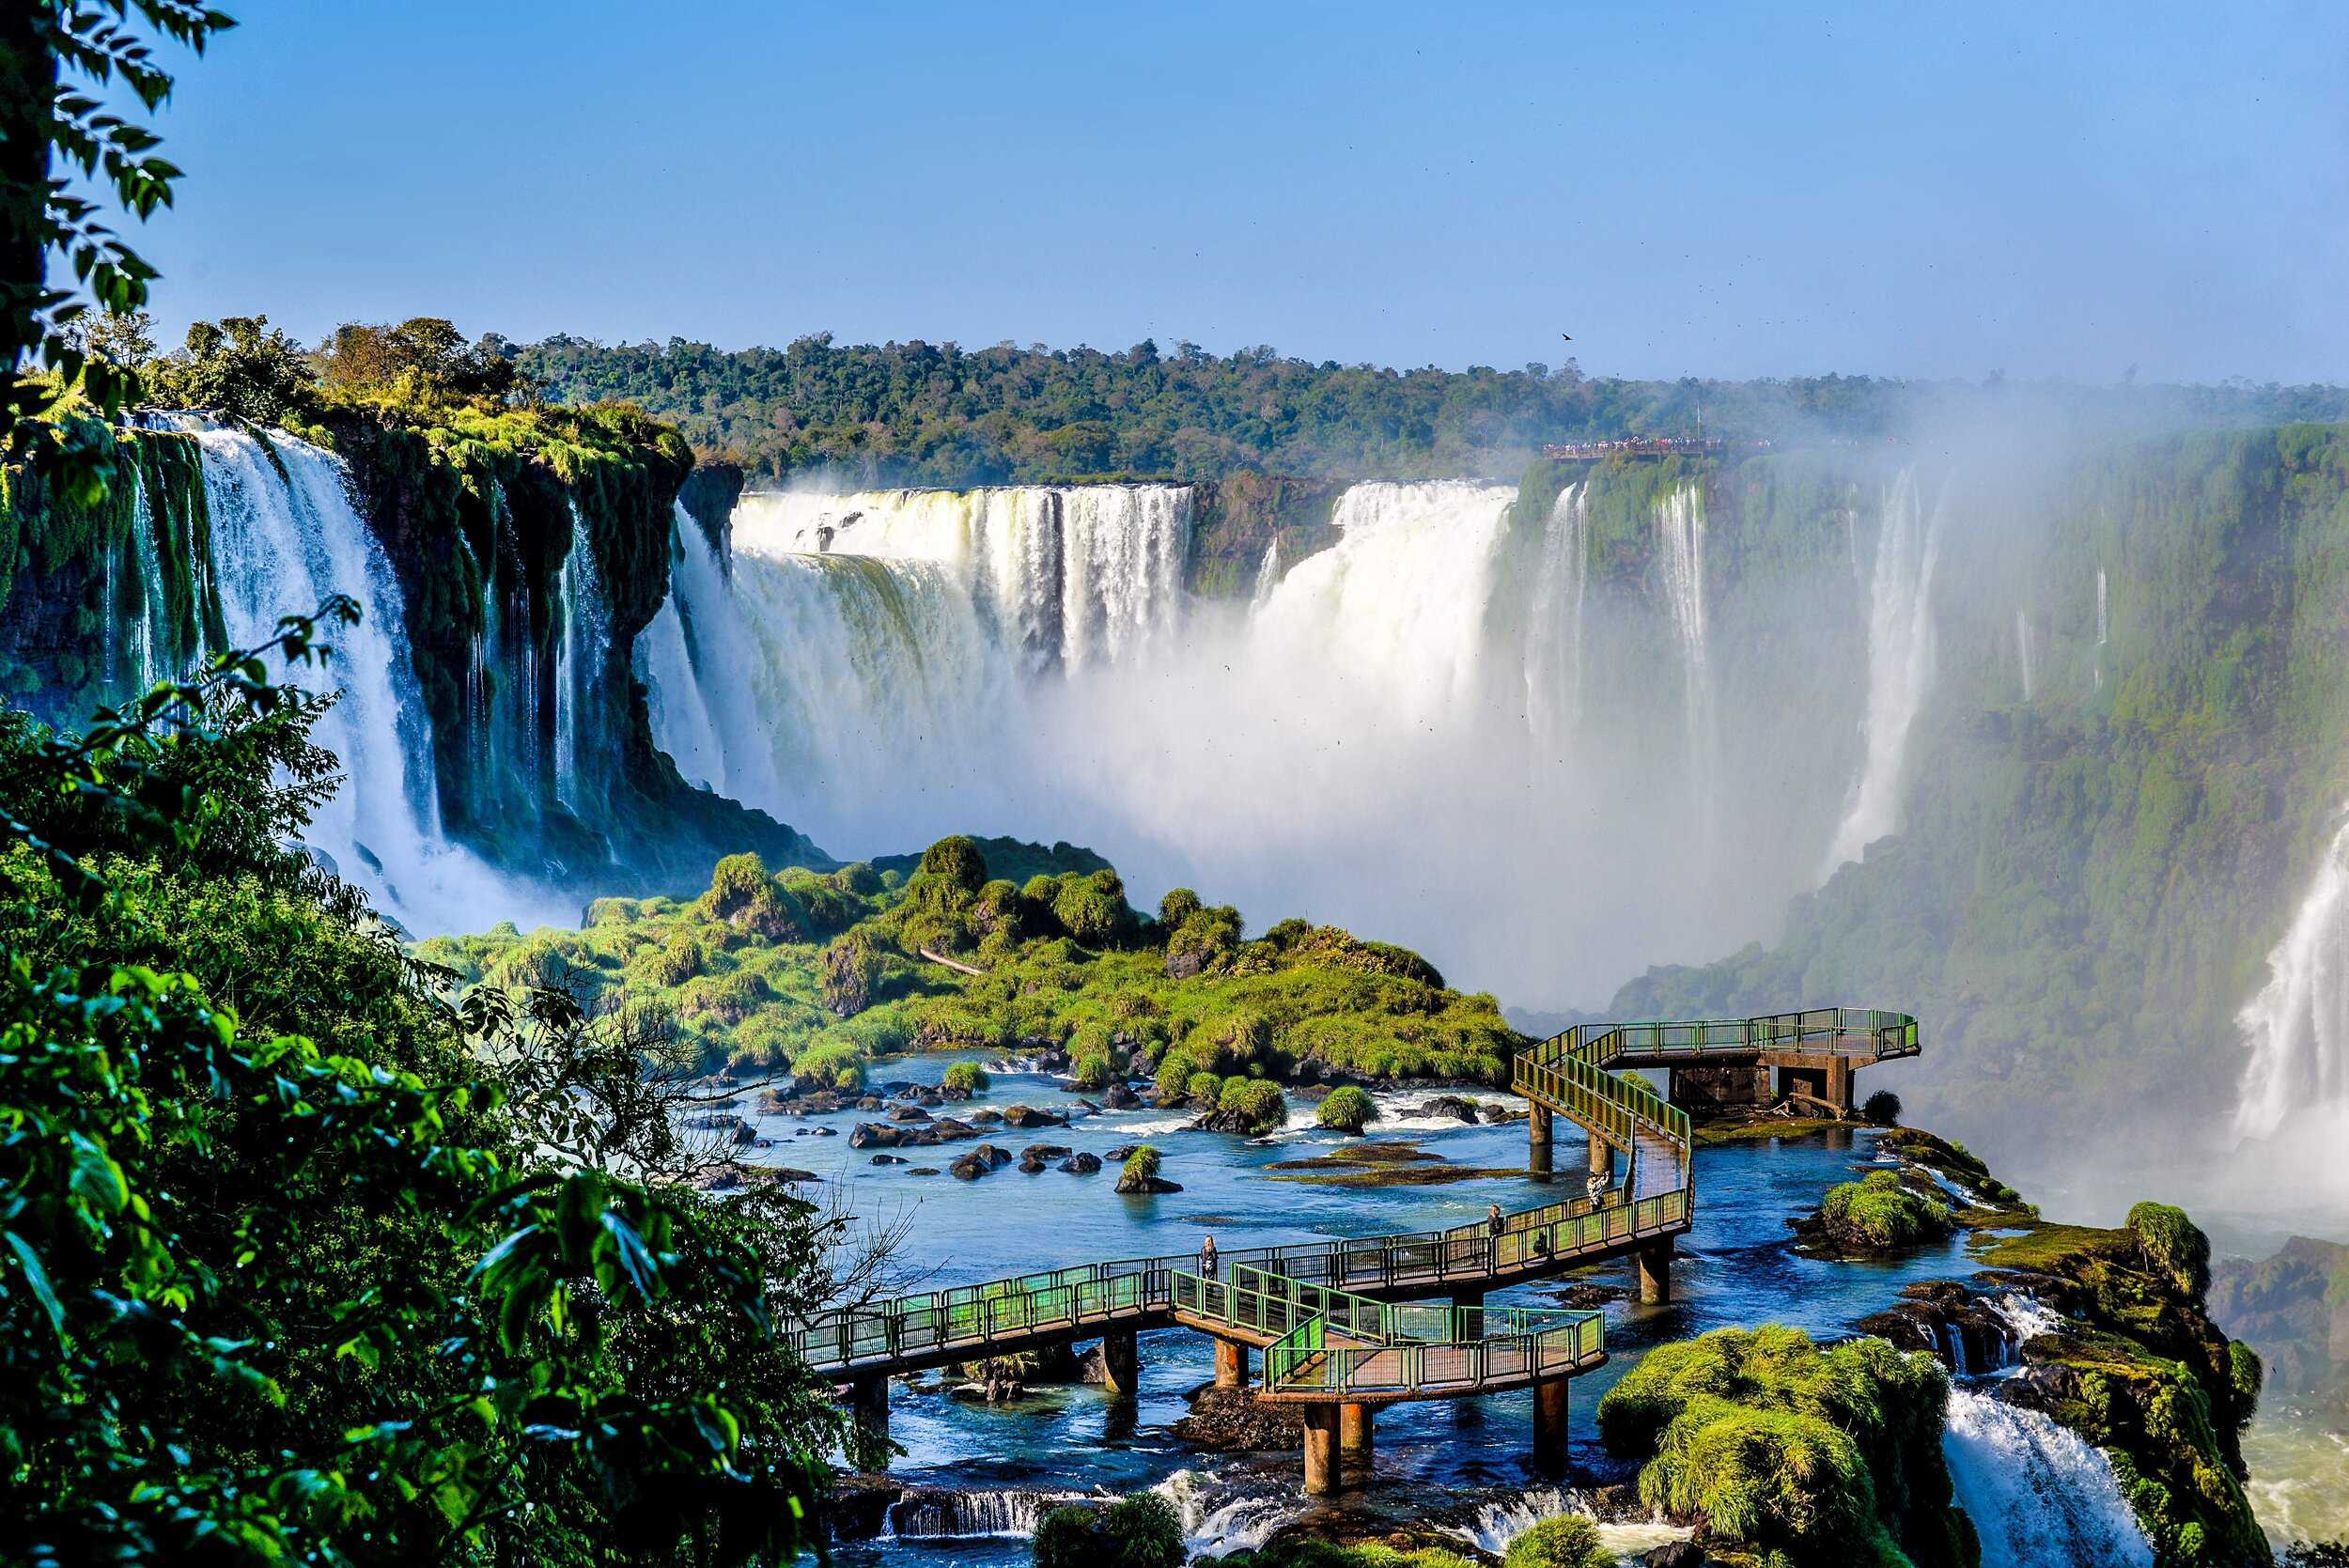 Буэнос айрес внутренние воды. Бразилия водопады Игуасу. Бразилия водопад Игуас. Парк Игуасу Аргентина. Водопады Игуасу (Iguazu), Аргентина и Бразилия.